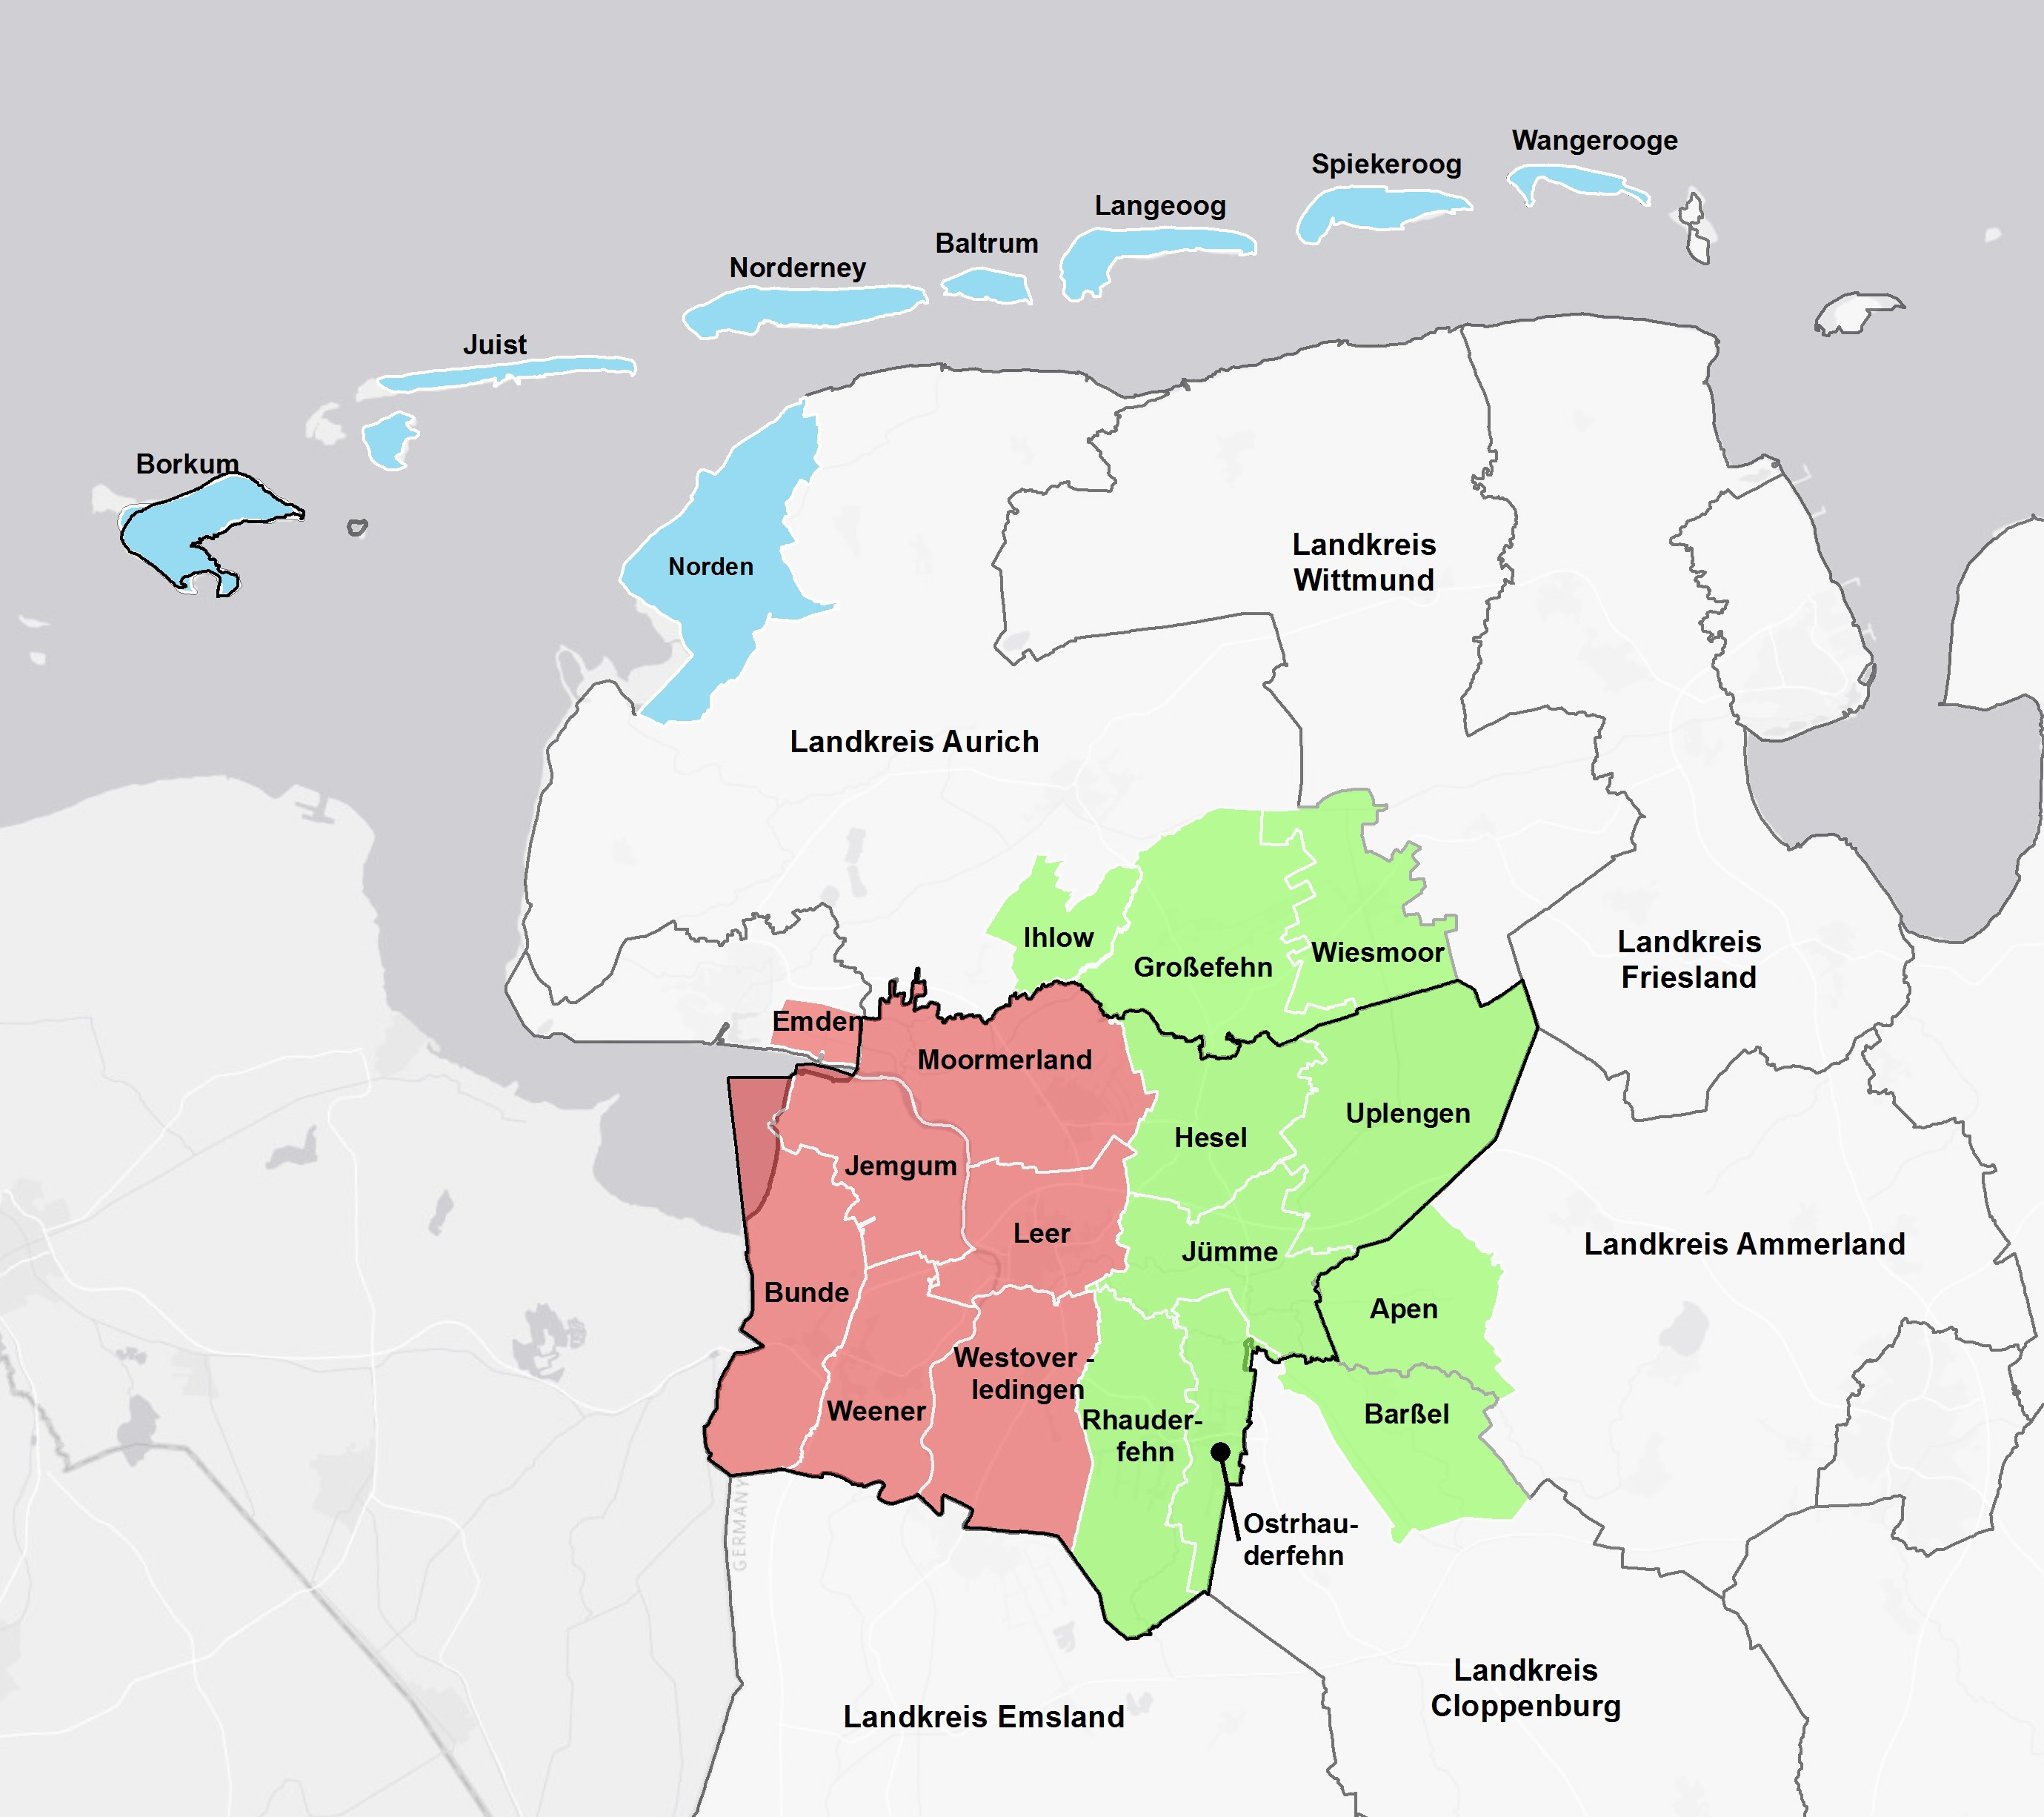 Auf dem Bild sieht man eine Landkarte, in der alle drei LEADER-Regionen mit den dazugehörigen Kommunen zu sehen sind.
Blau ist die Region Wattenmeer Achter mit den Inseln Borkum, Juist, Norderney, Baltrum, Langeoog, Spiekeroog, Wangerooge und der Stadt Norden.
Rot ist die Region Ostfriesland an der Ems mit den Städten Emden, Weener (Ems) und Leer sowie den Gemeinden Moormerland, Jemgum, Bunde und Westoverledingen.
Grün ist das Fehngebiet. Es umfasst die Gemeinde Apen im Landkreis Ammerland, die Gemeinde Großefehn und die Stadt Wiesmoor, vier Ortsteile der Gemeinde Ihlow im Landkreis Aurich, die zwei Samtgemeinden Hesel und Jümme, die Gemeinden Ostrhauderfehn, Rhauderfehn und Uplengen im Landkreis Leer sowie die Gemeinde Barßel im Landkreis Cloppenburg.